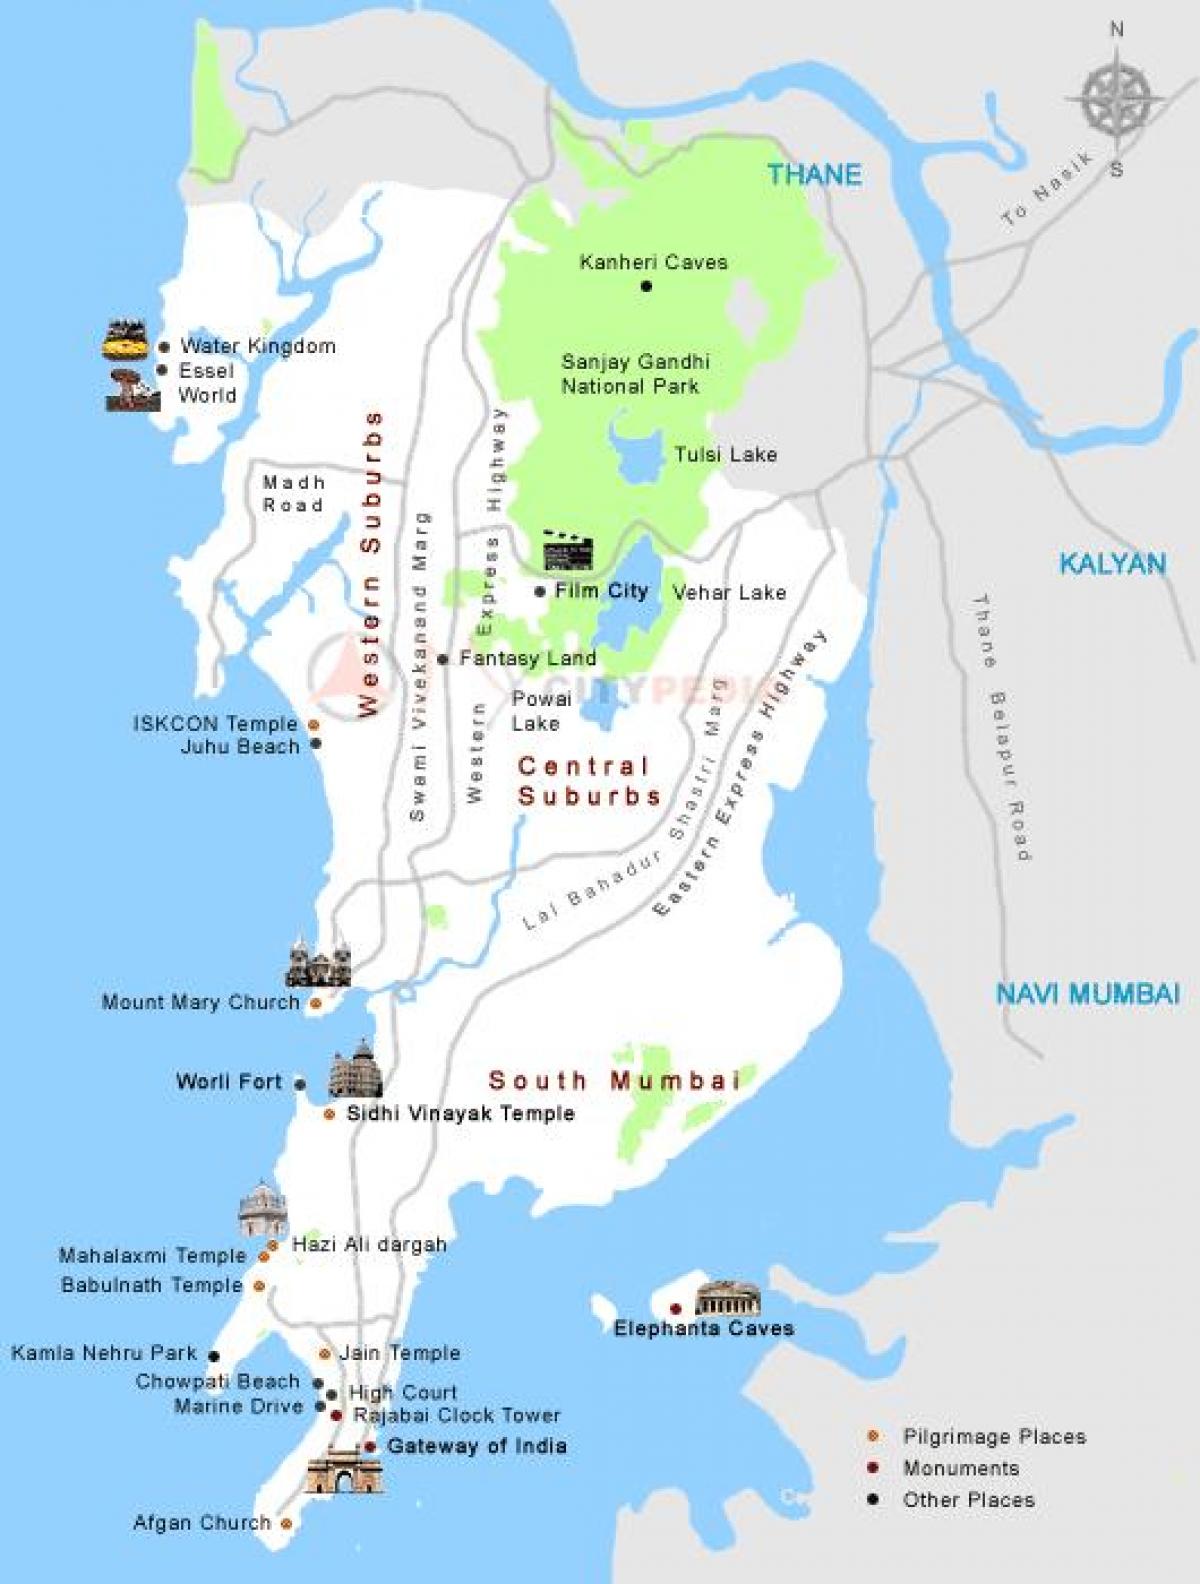 મુંબઇ દર્શન સ્થાનો નકશો